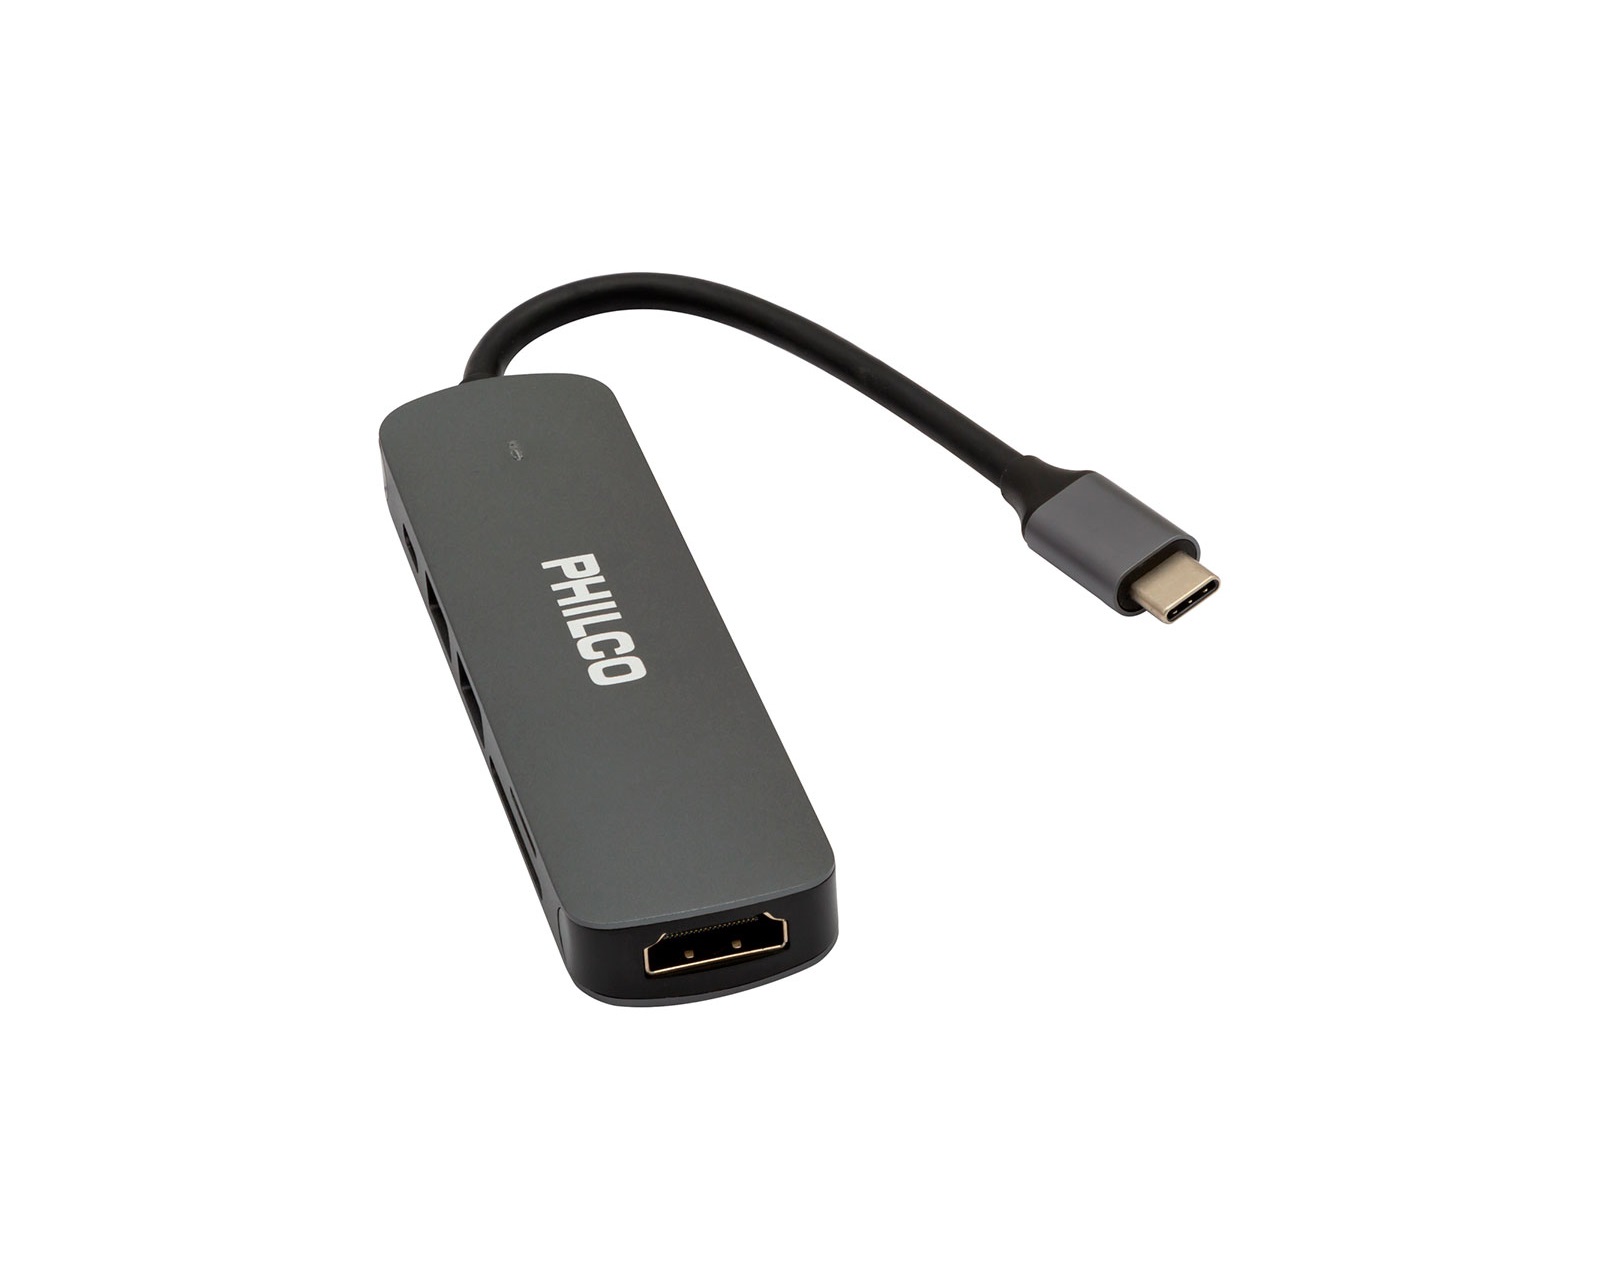 Adaptador Multipuertos USB-C - Docking Station Portátil USB Tipo C a HDMI  de 4K - Hub Ladrón USB 3.0 de 2 Puertos - Lector de Tarjetas SD/SDHC - GbE  